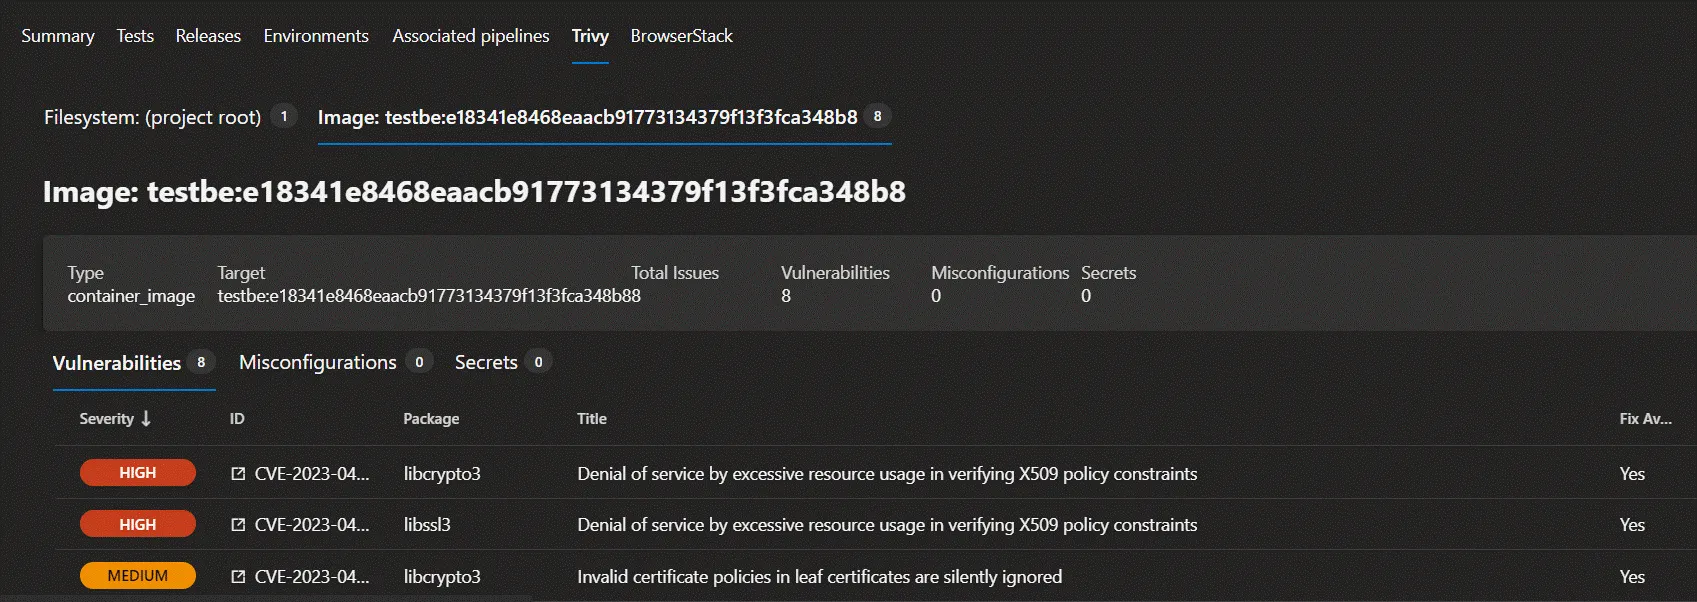 Trivy Azure DevOps Docker image scan output